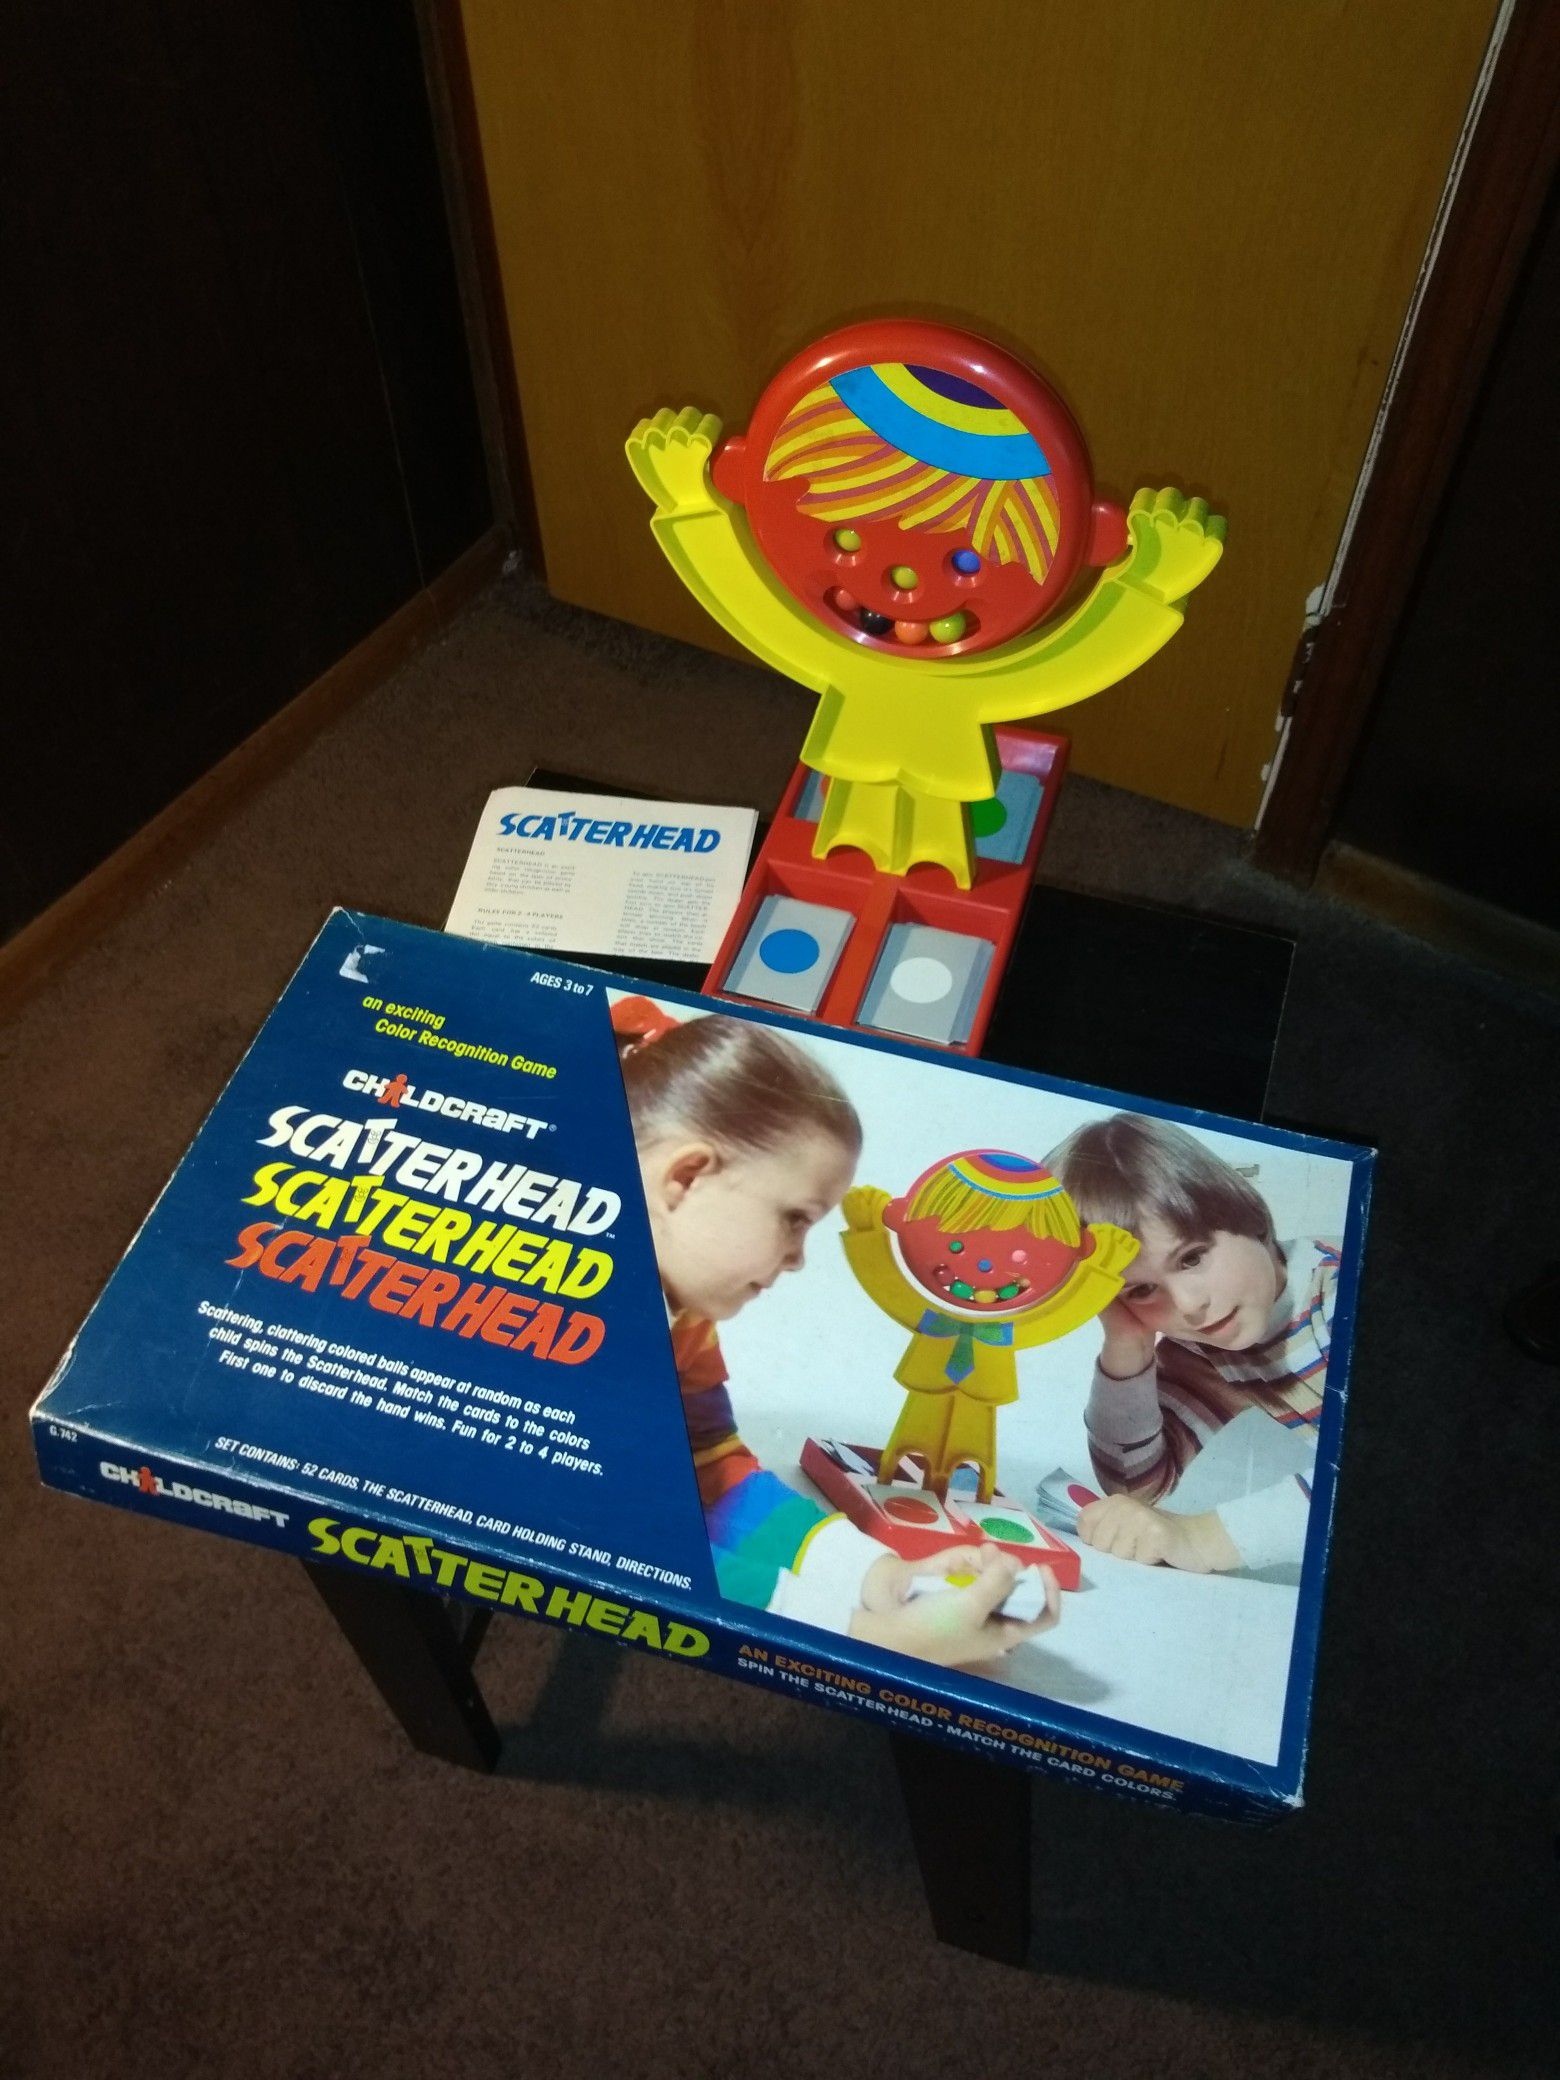 1979 SCATTERHEAD GAME FOR KIDS...VINTAGE.